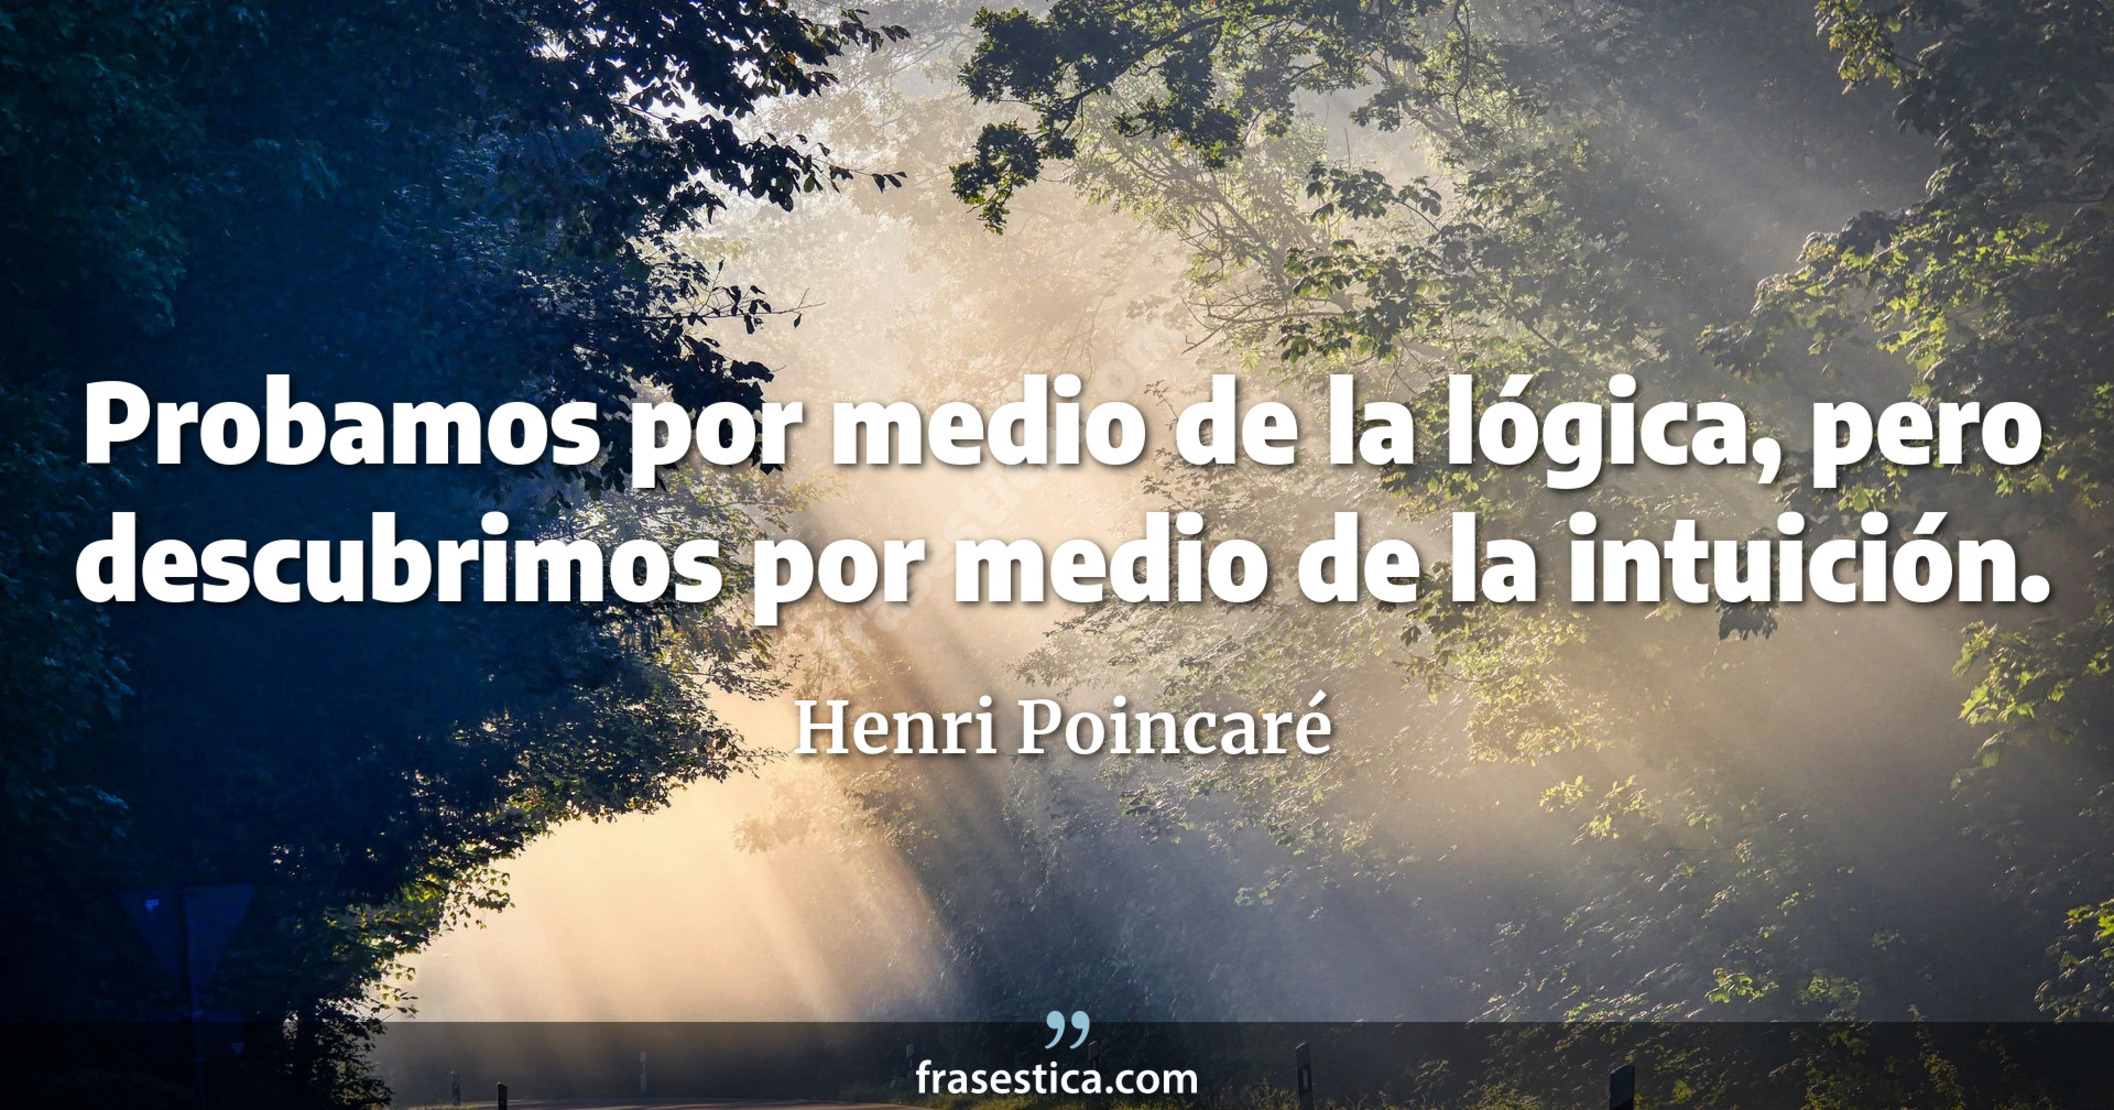 Probamos por medio de la lógica, pero descubrimos por medio de la intuición. - Henri Poincaré